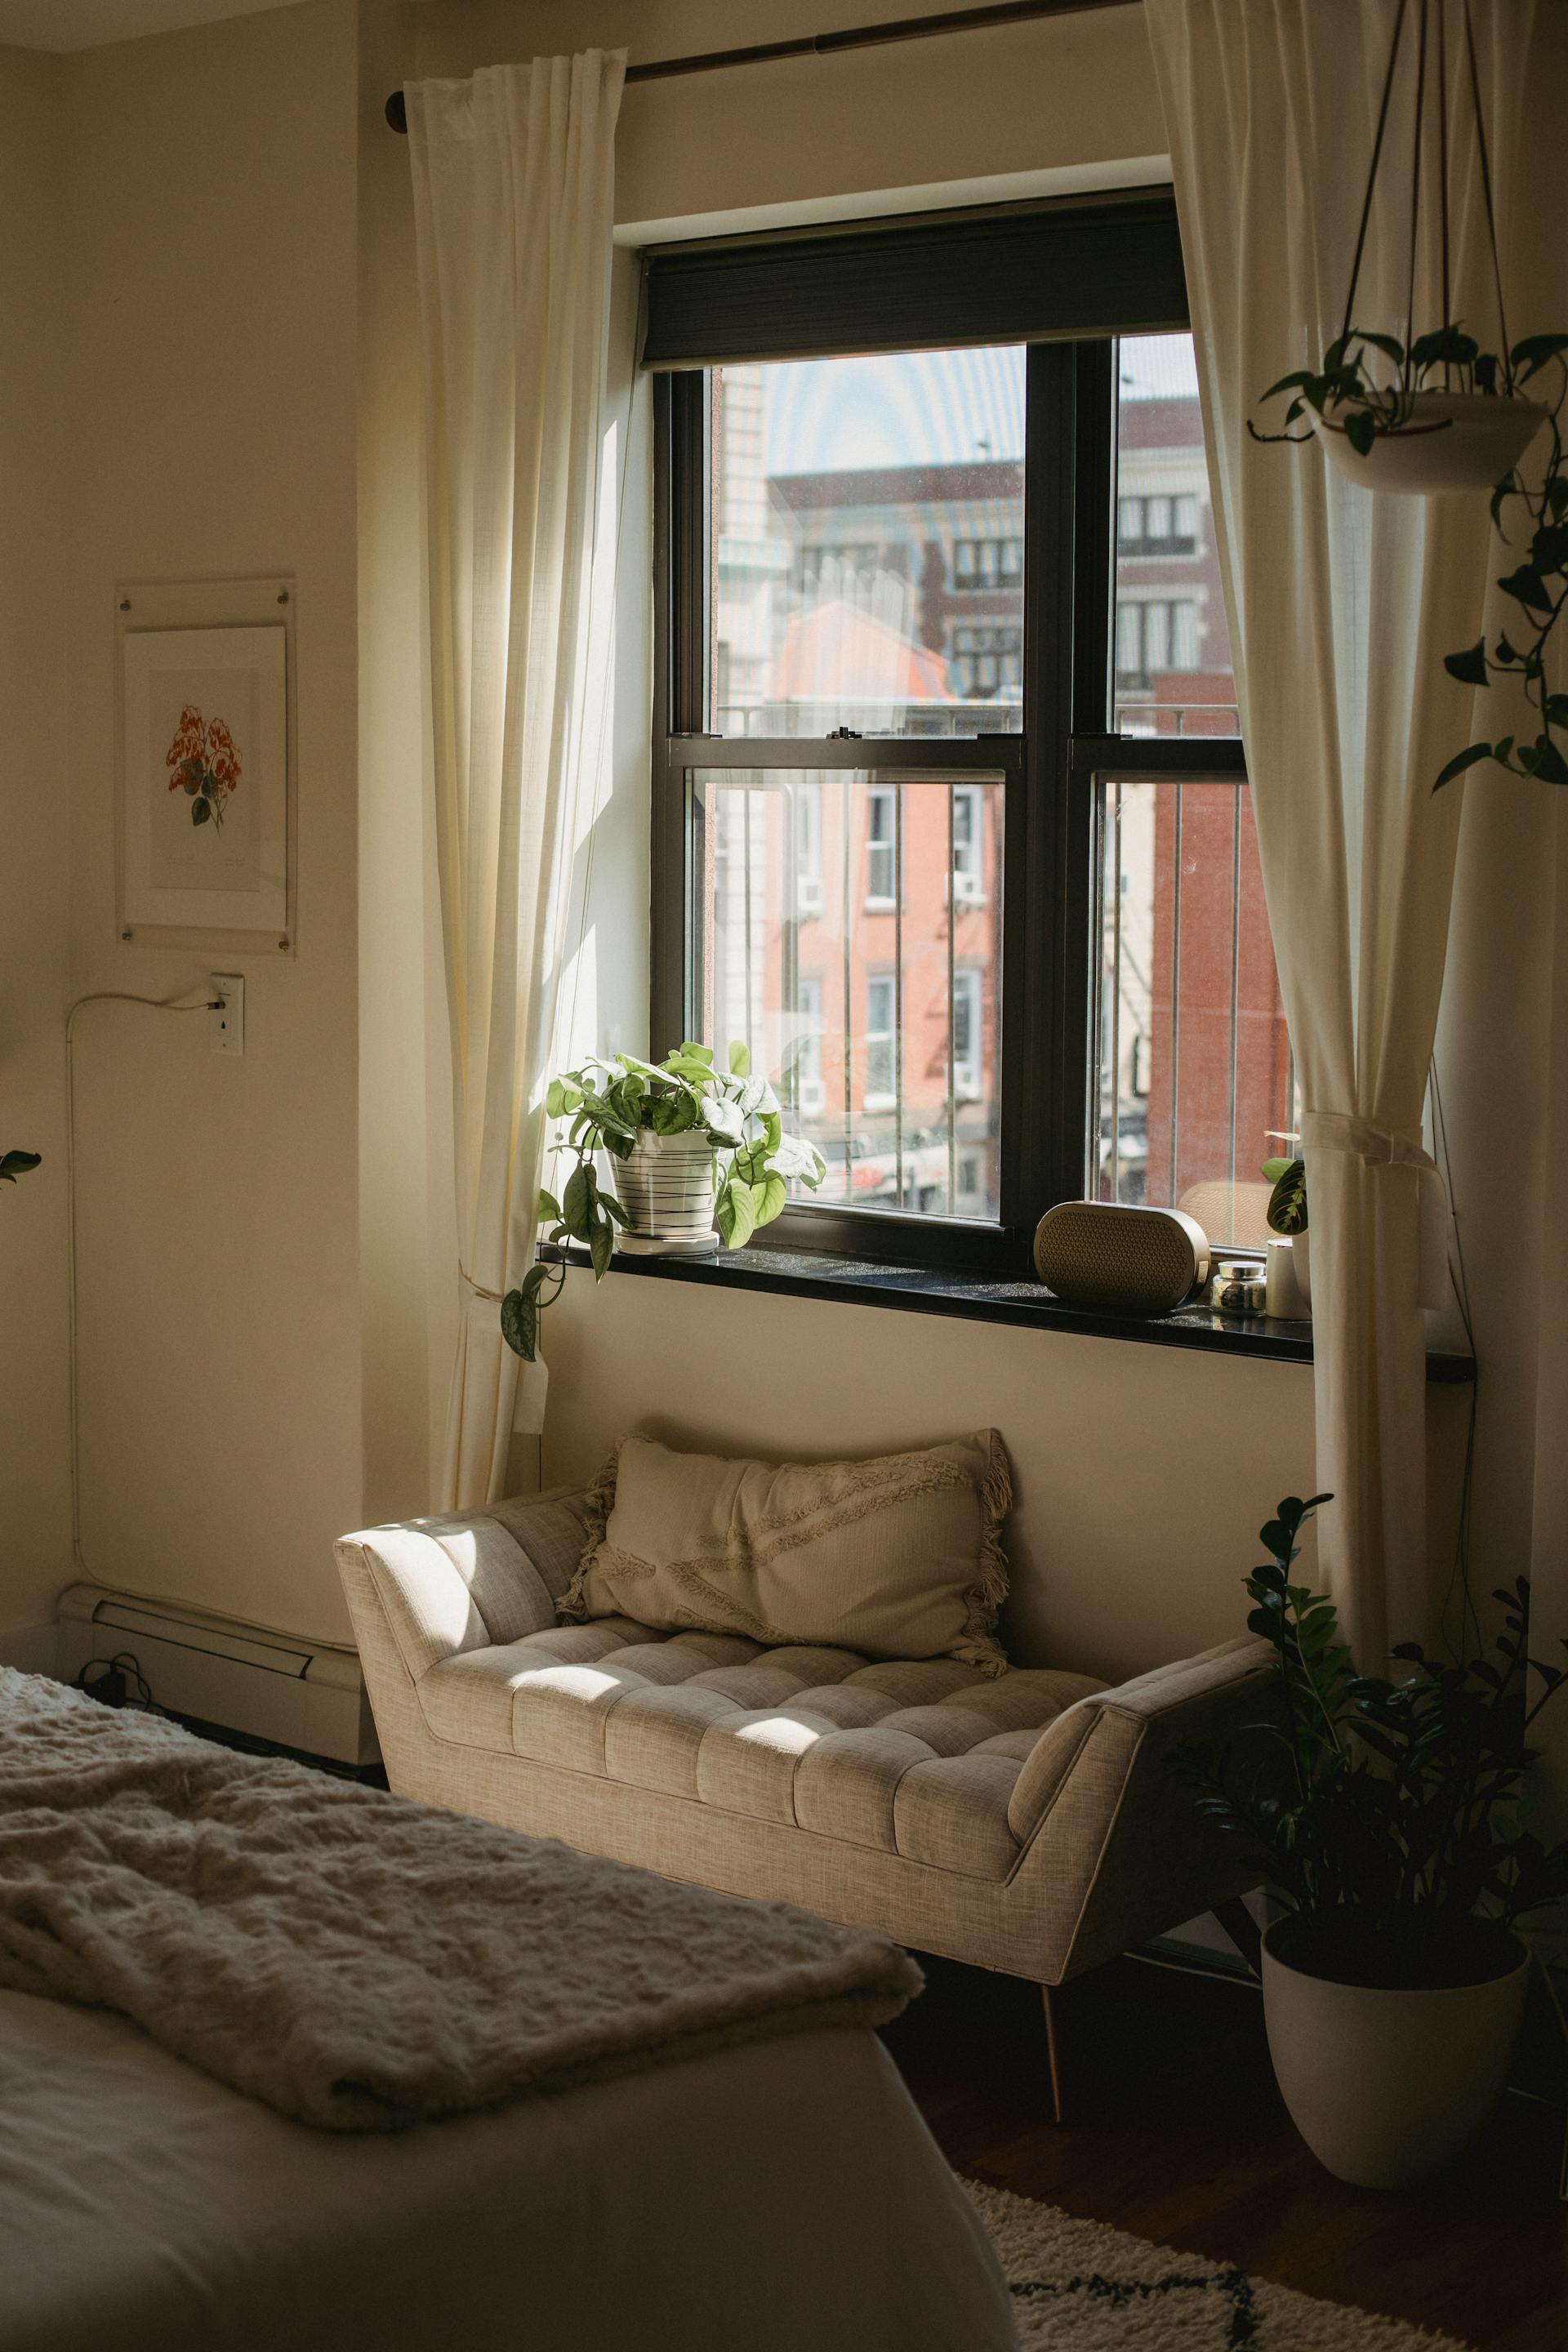 Une vue plus rapprochée d'une fenêtre dans une chambre à coucher | Source : Pexels